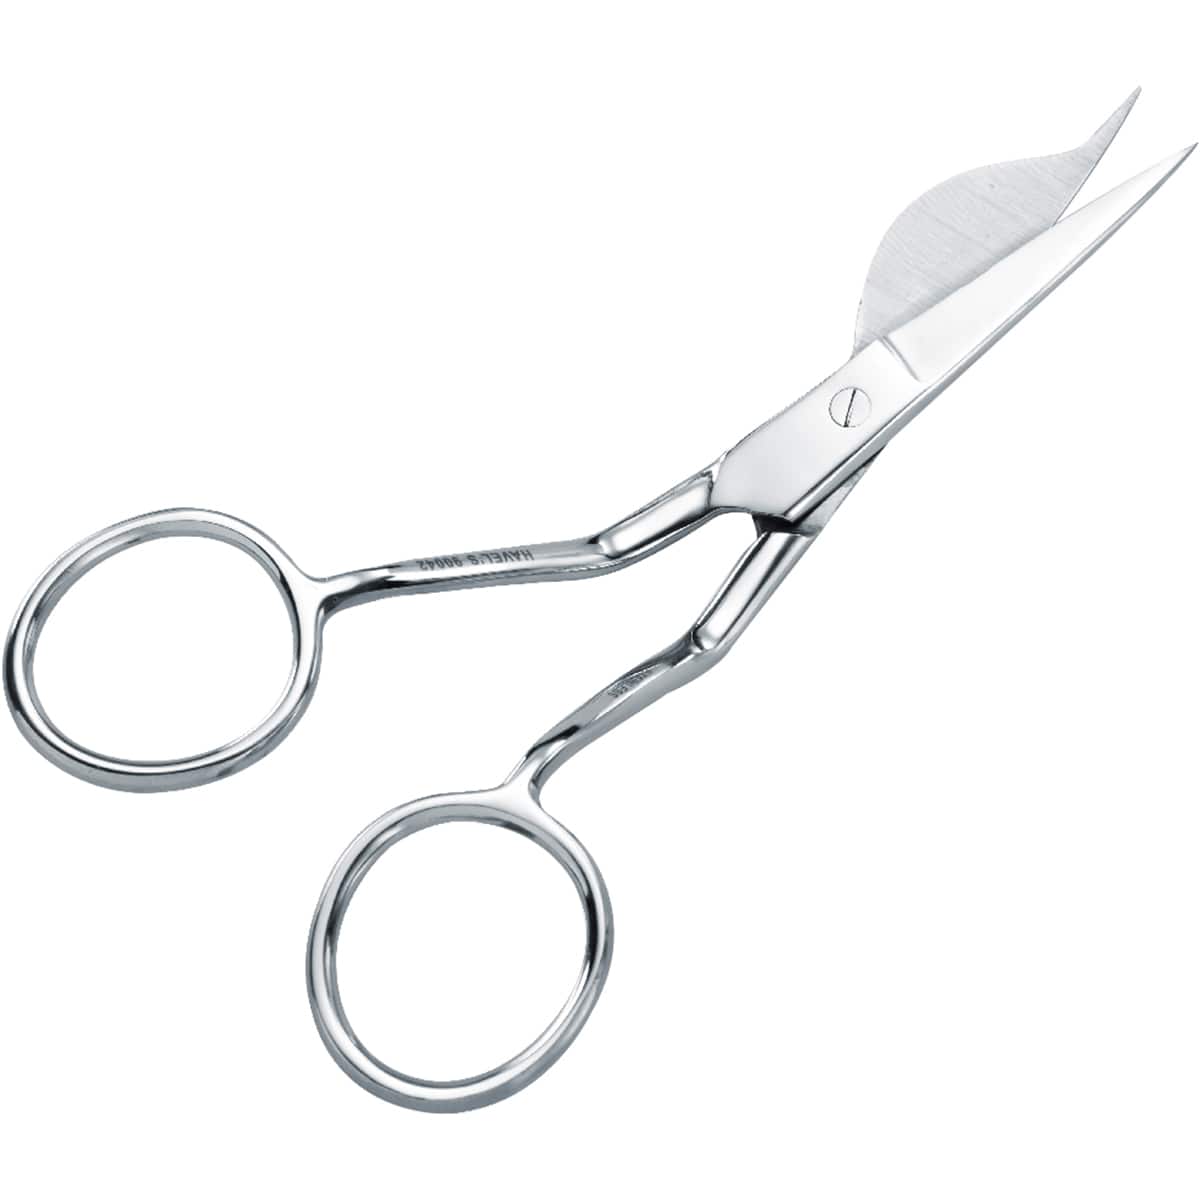 Duckbill scissors for left hand applications 6/15.2